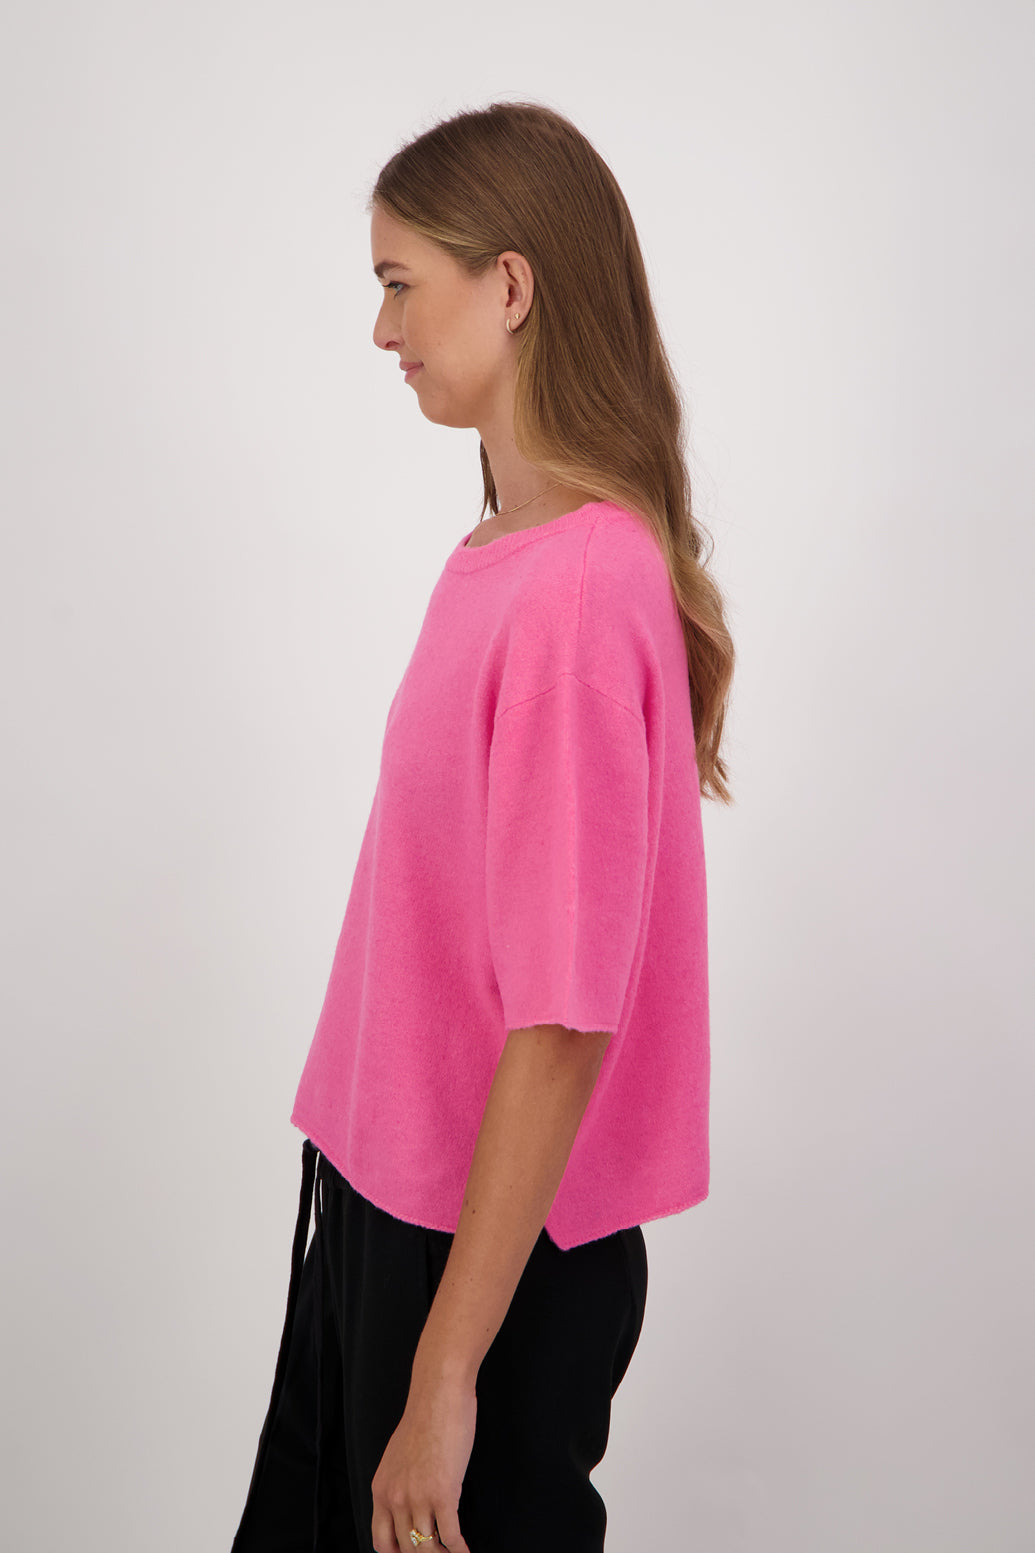 Dapper Wool Blend Short Sleeve Top/T-Shirt - Pink